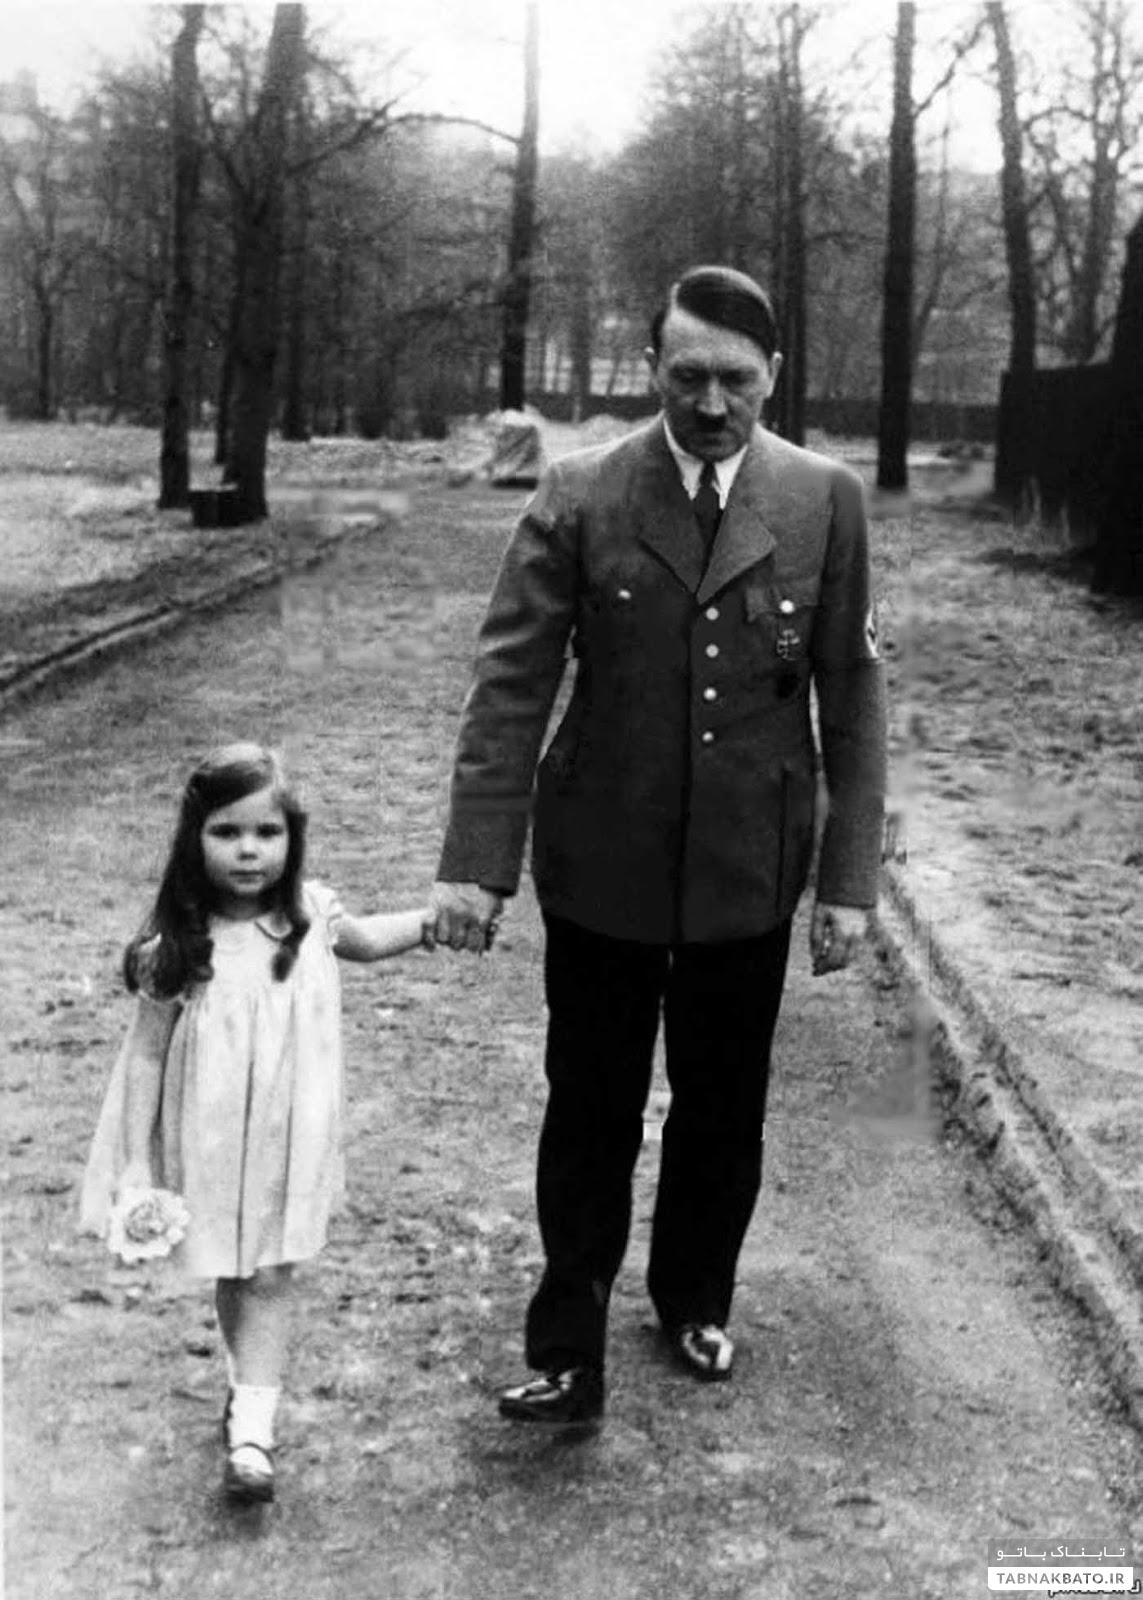 چرا بانوی اول آلمان نازی بچه هایش را کشت؟!